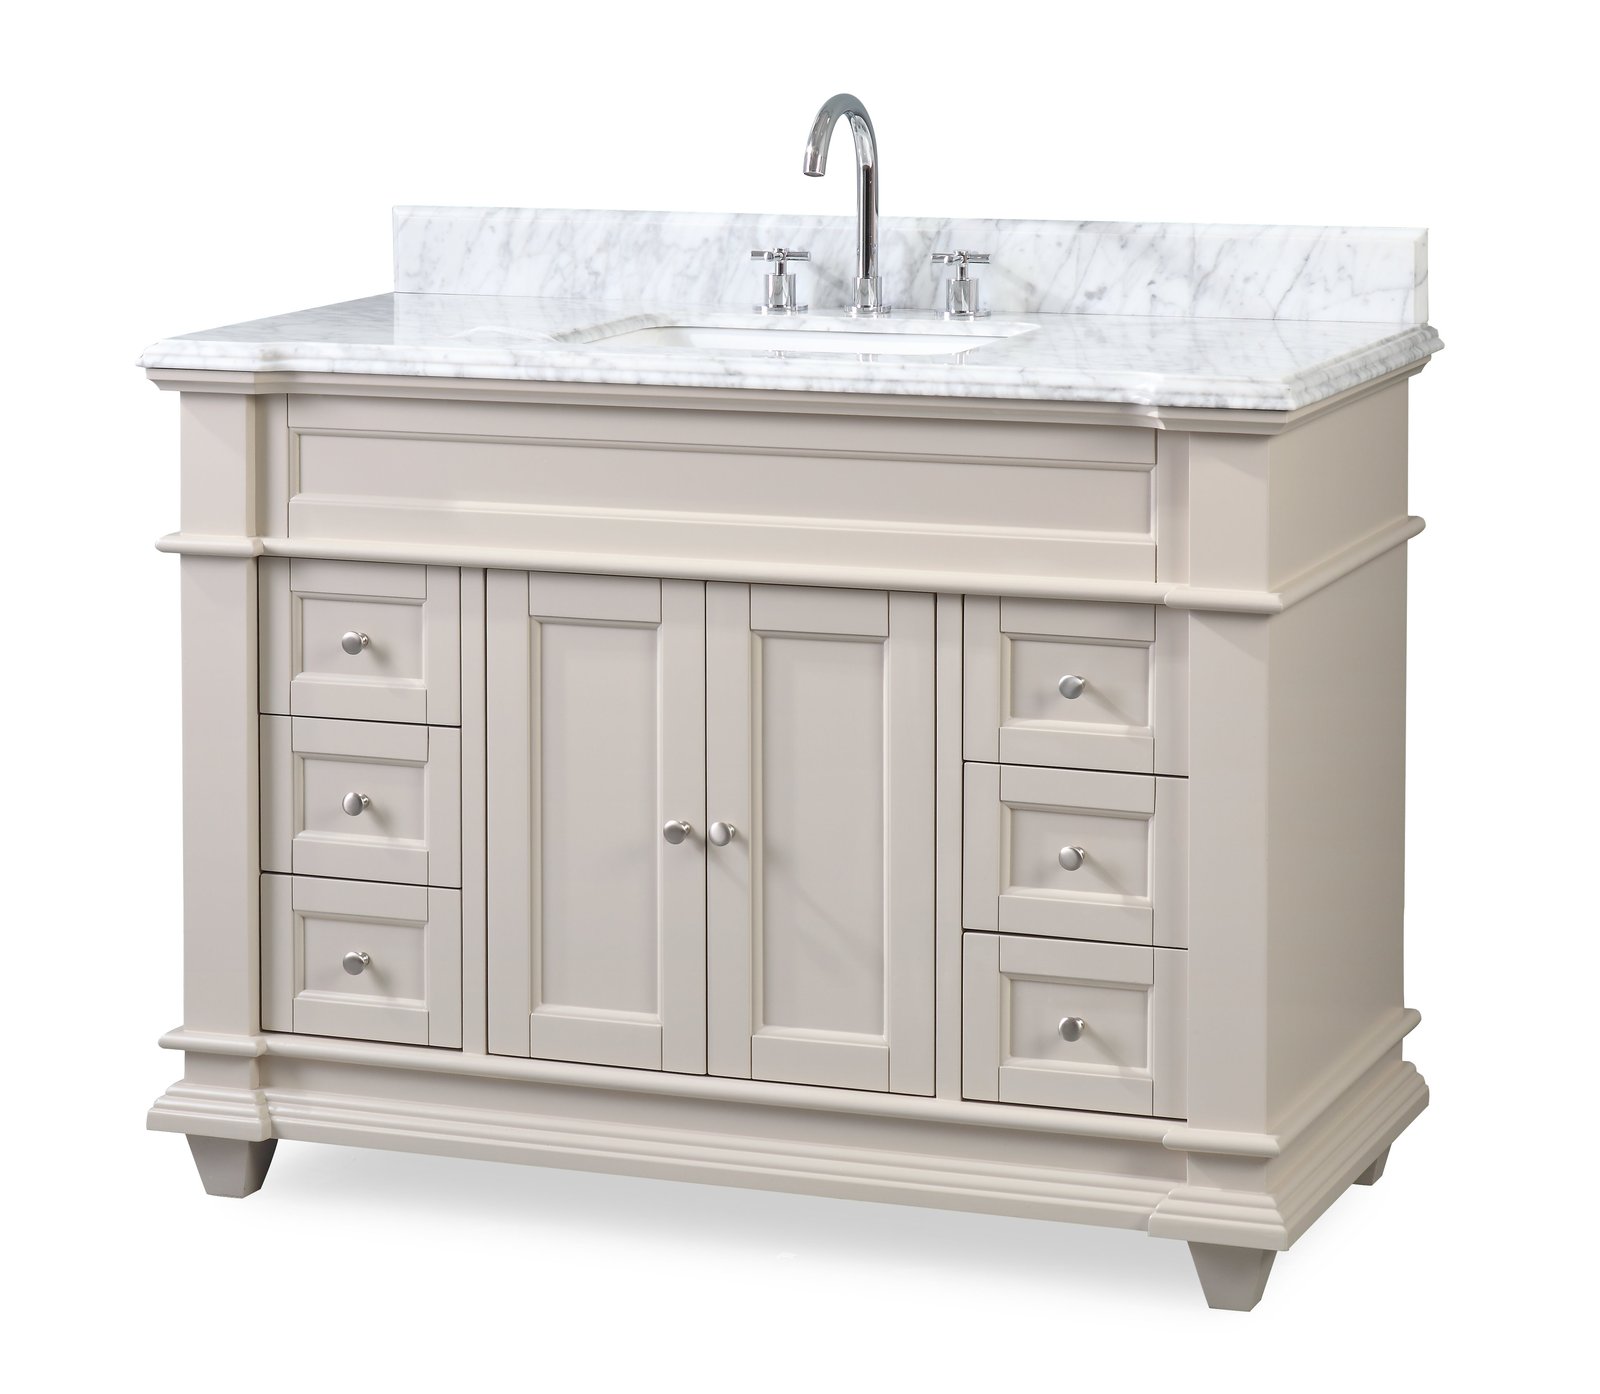 48" Italian Carrara Marble Top Bathroom Vanity